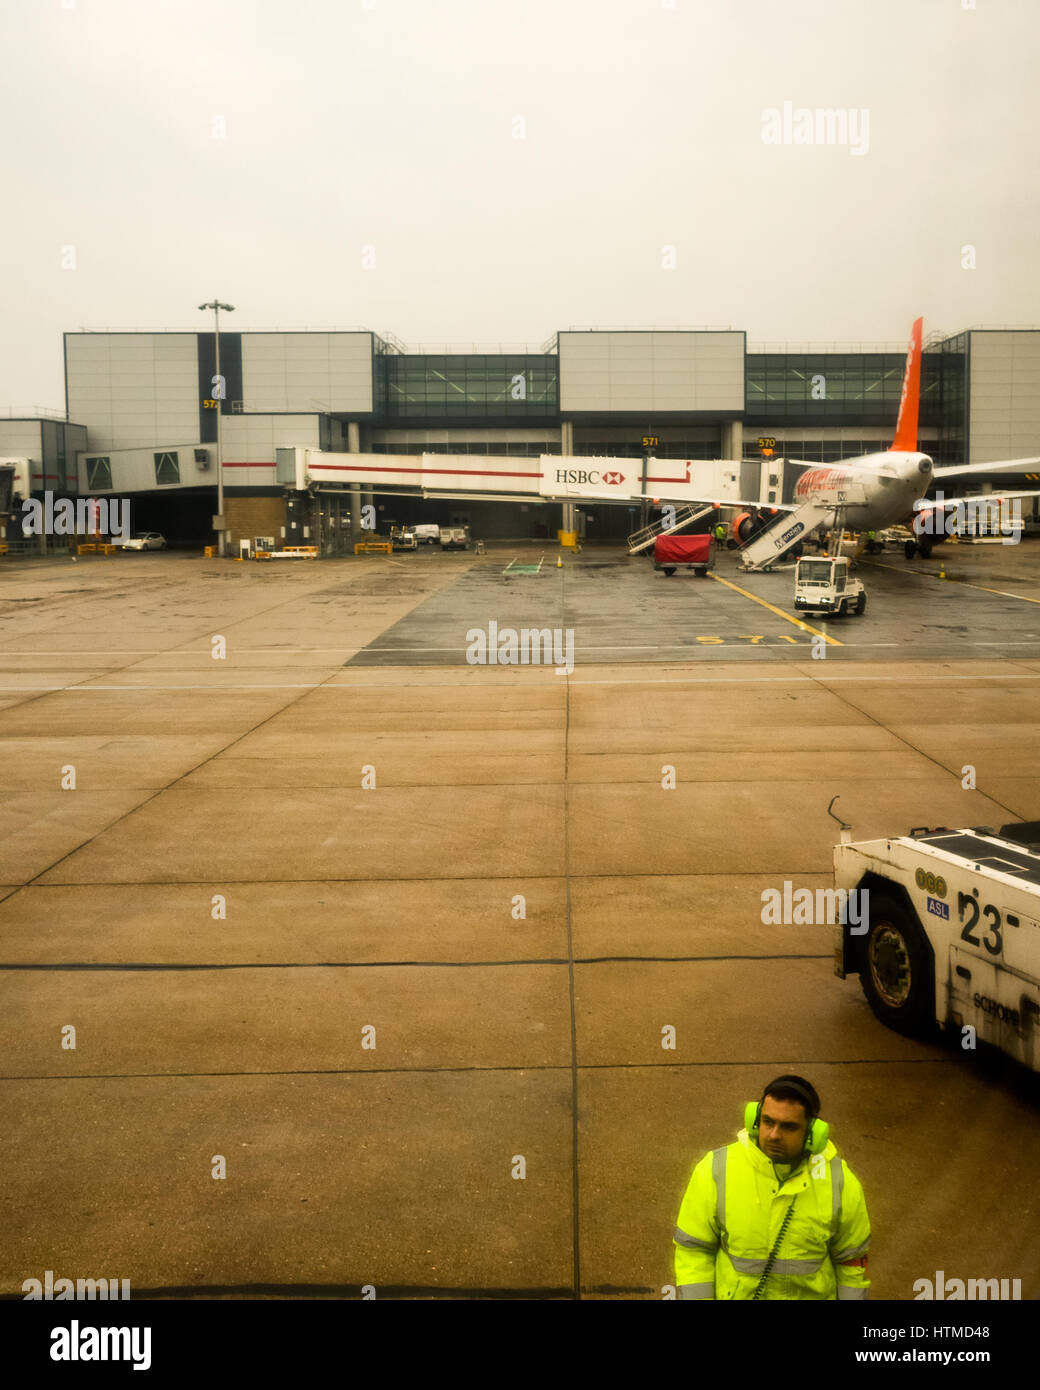 Londres Gatwick. England UK. Les avions d'EasyJet sur la piste de l'aéroport Gatwick de Londres la préparation pour le décollage. Membre de l'équipe au sol sur la piste mouillée portant une veste haute visibilité fluorescent. L'un des bâtiments de l'aéroport est à l'arrière-plan. Banque D'Images